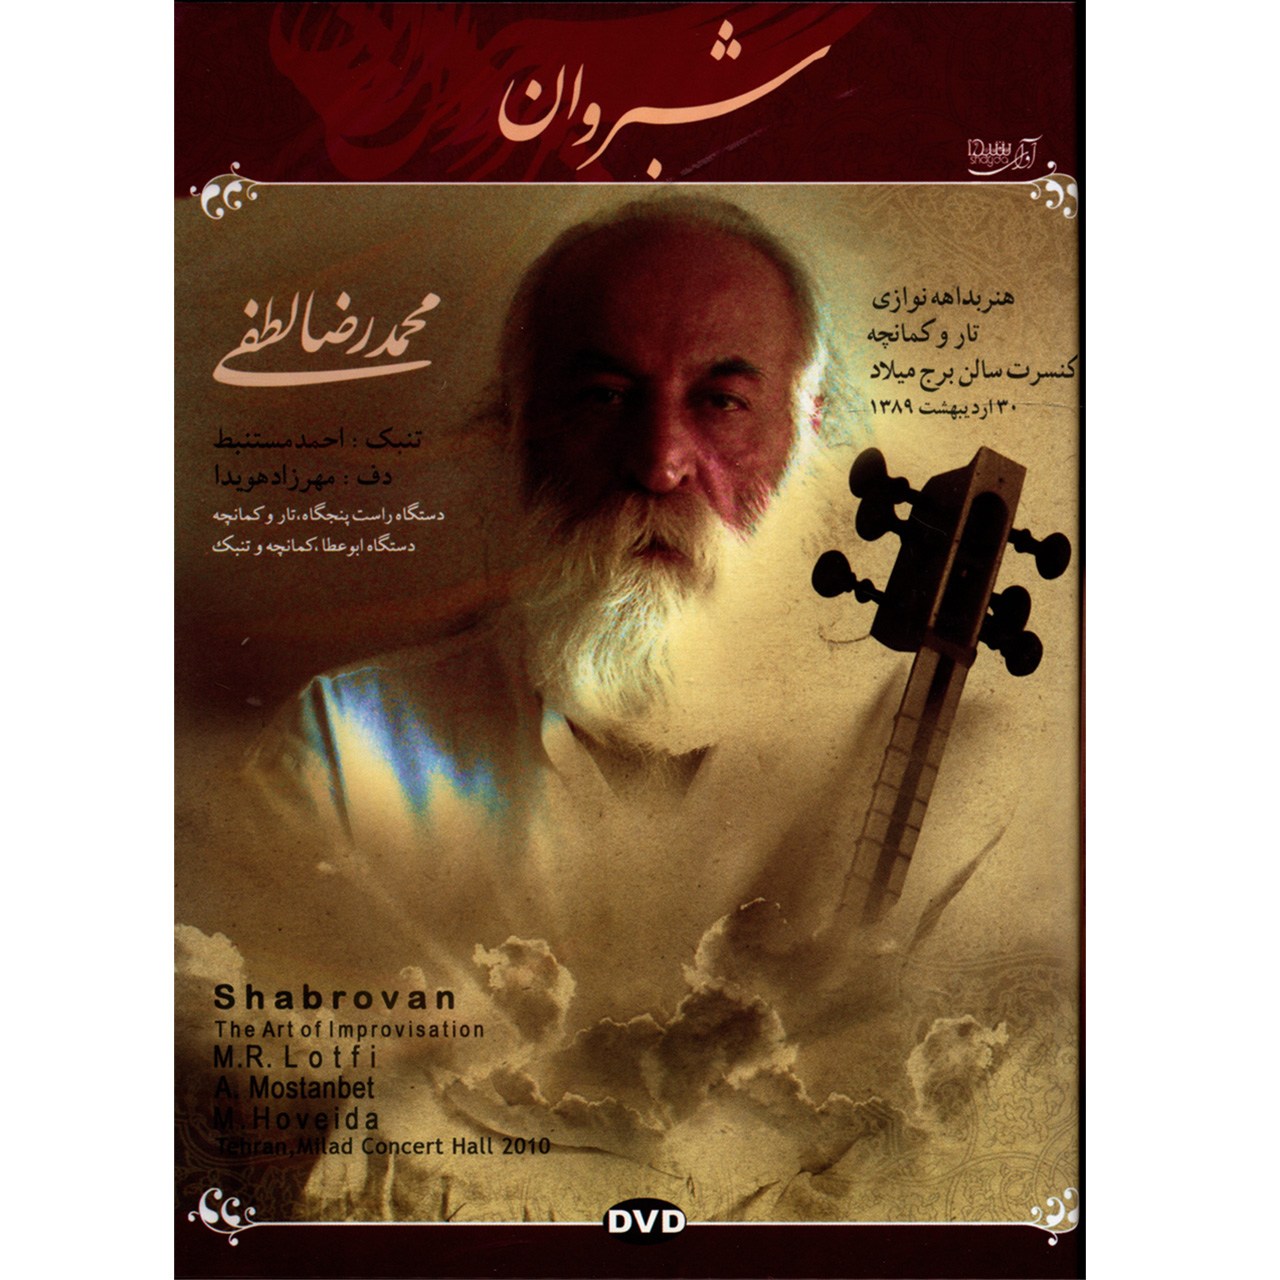 آلبوم تصویری کنسرت شبروان اثر محمد رضا لطفی